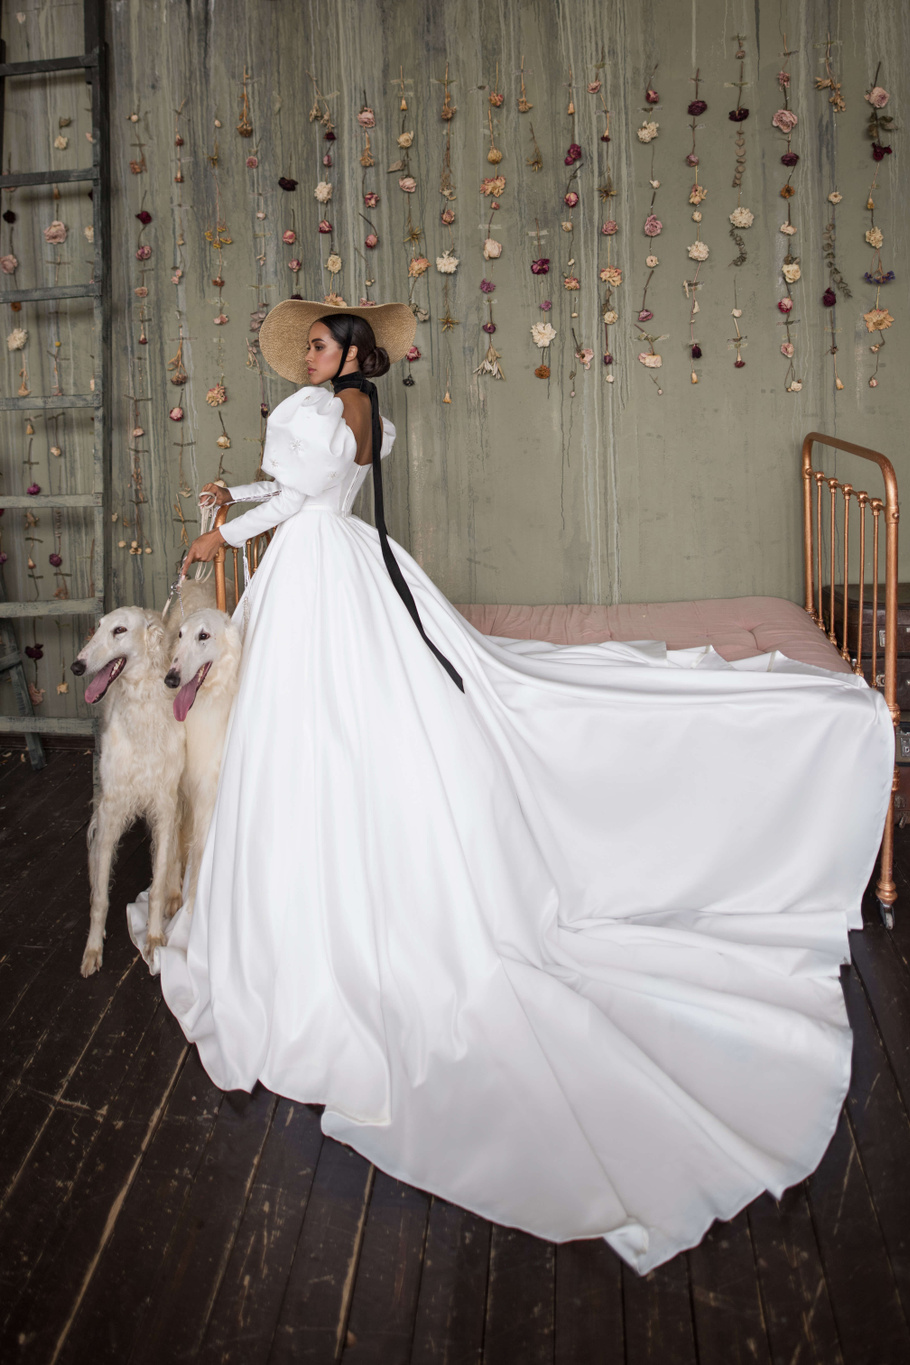 Купить свадебное платье «Итан» Бламмо Биамо из коллекции Нимфа 2020 года в Москве